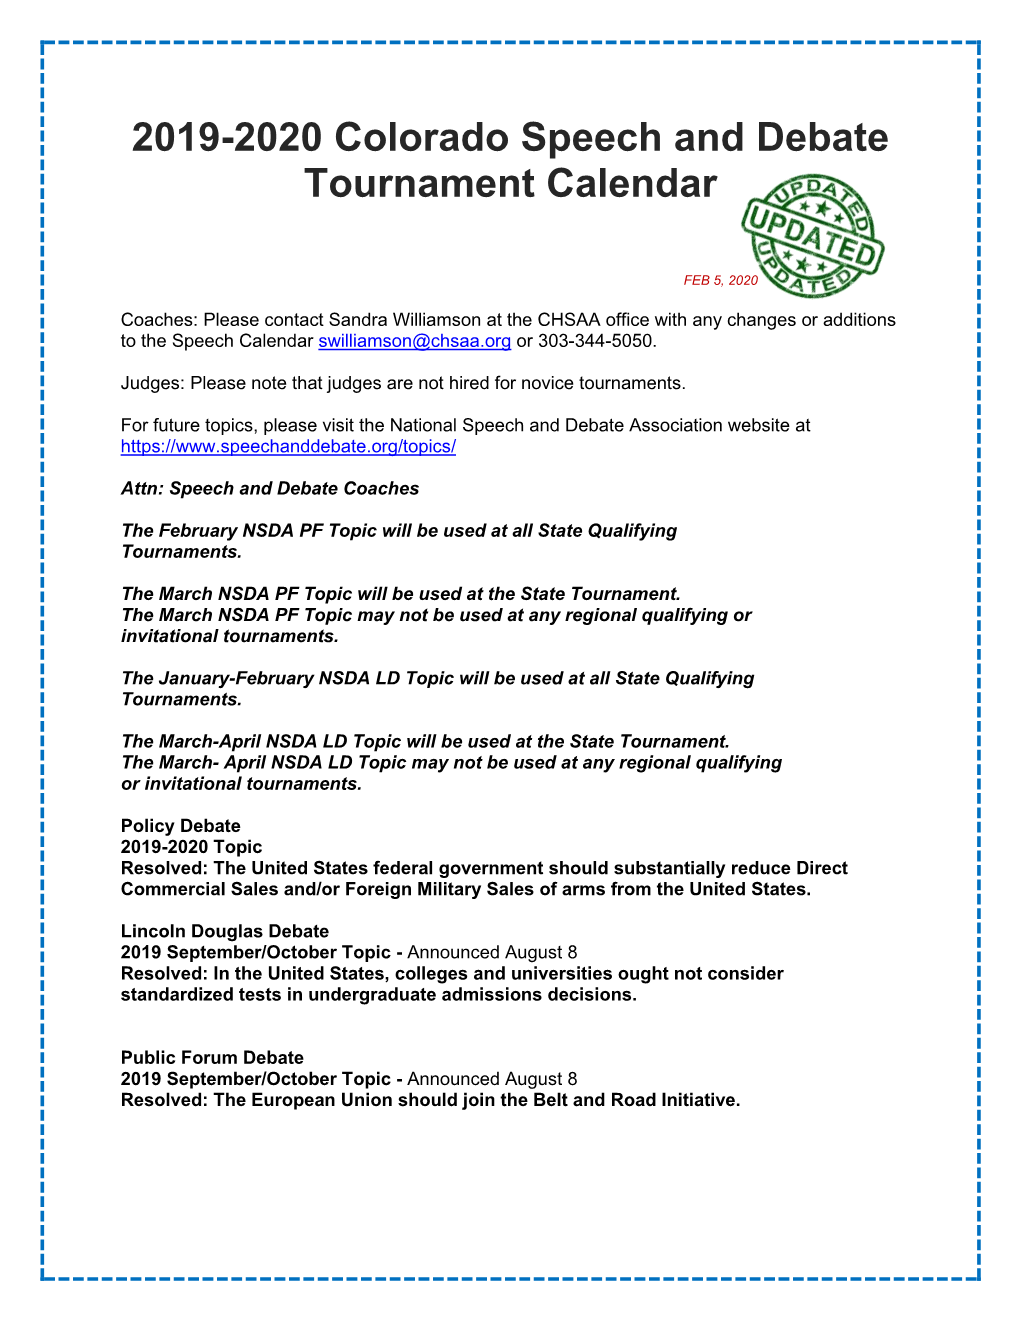 2019-2020 Colorado Speech and Debate Tournament Calendar